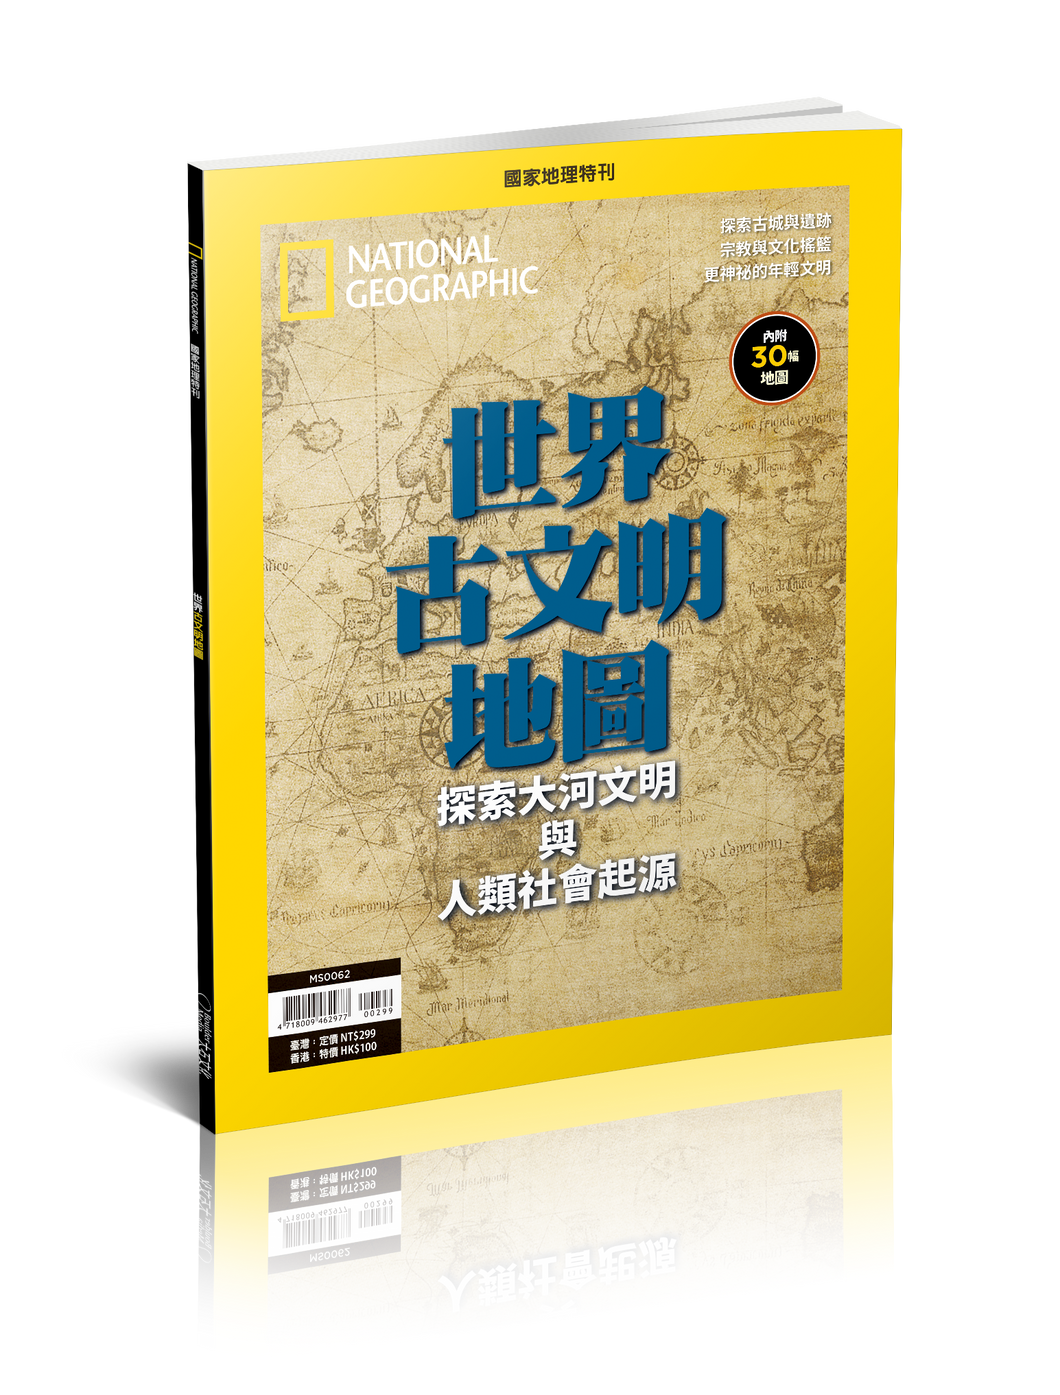 國家地理雜誌 中文版 紙本 訂閱 1年12期 合購 《世界古文明地圖》特刊